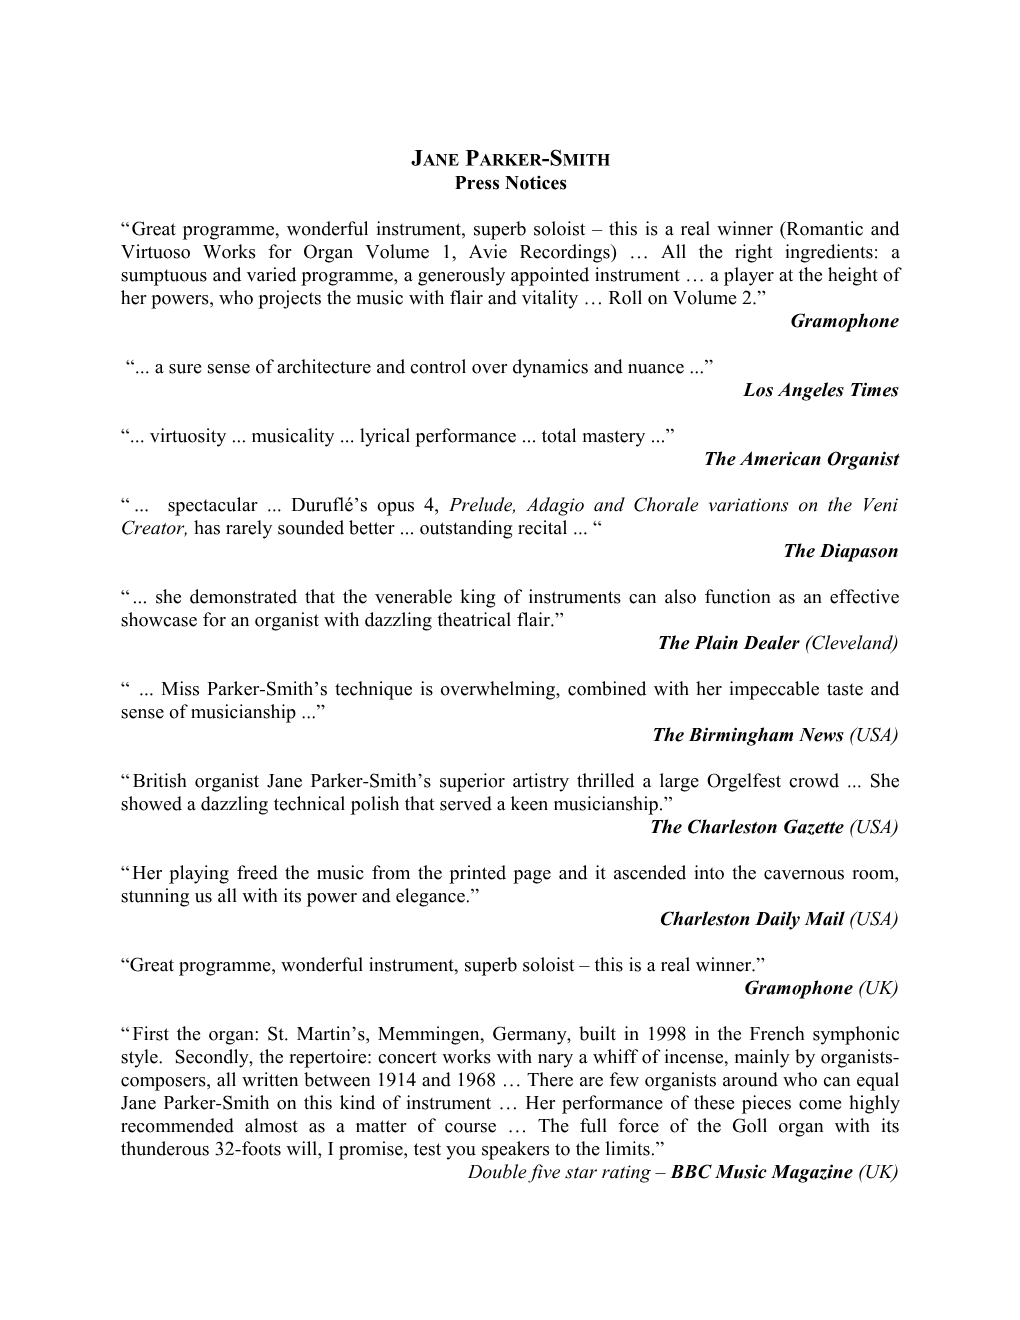 Press Notices, Page 3